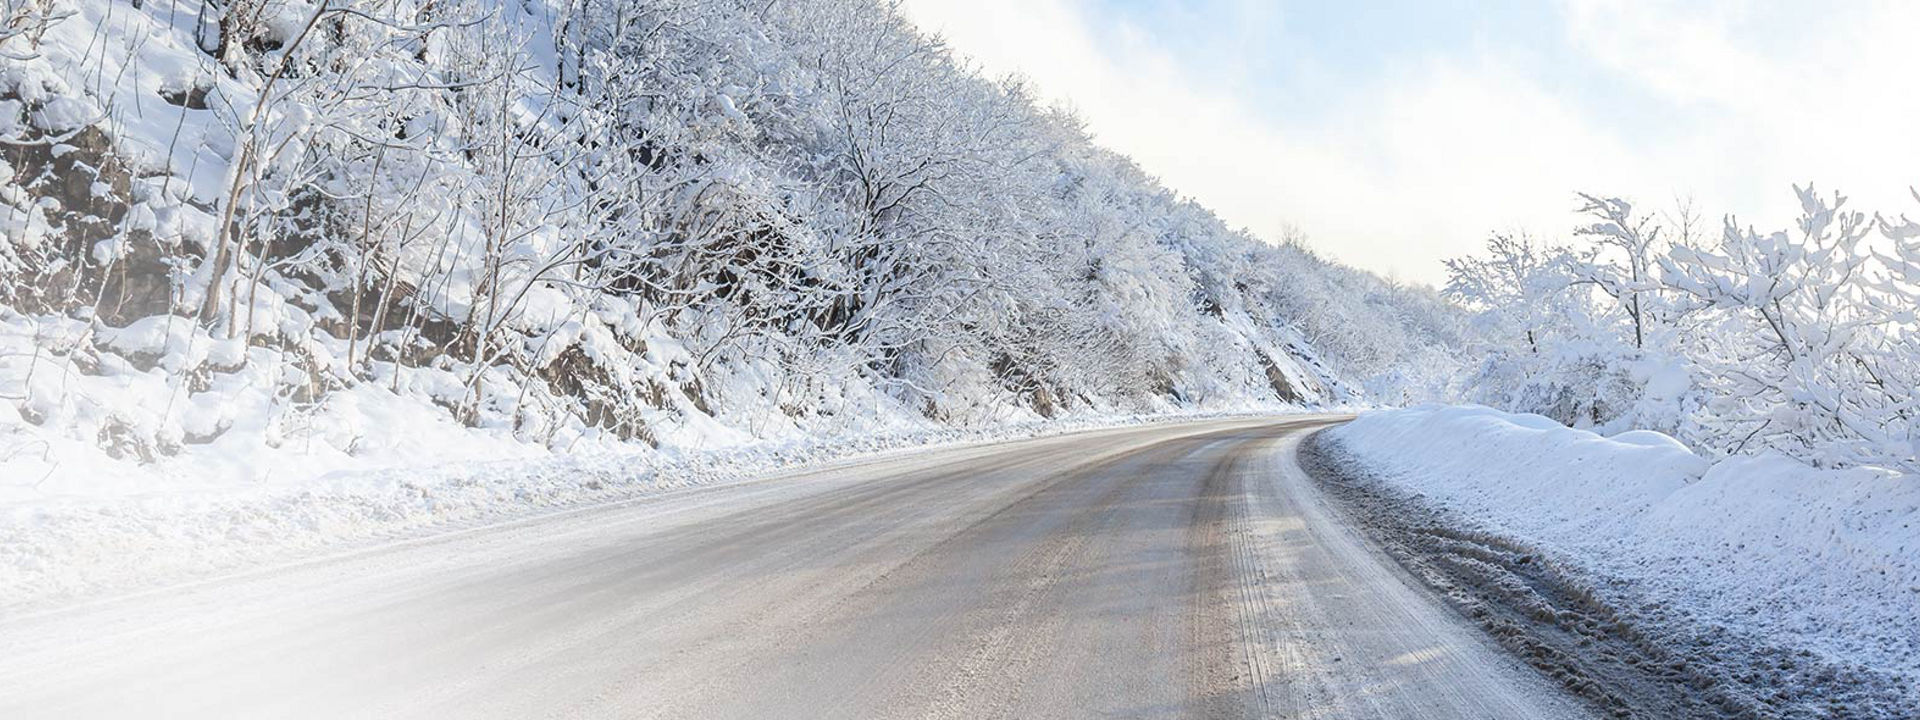 Această imagine arată un drum de iarnă acoperit de zăpadă cu urme de la anvelopele de iarnă Bridgestone pentru camioane.